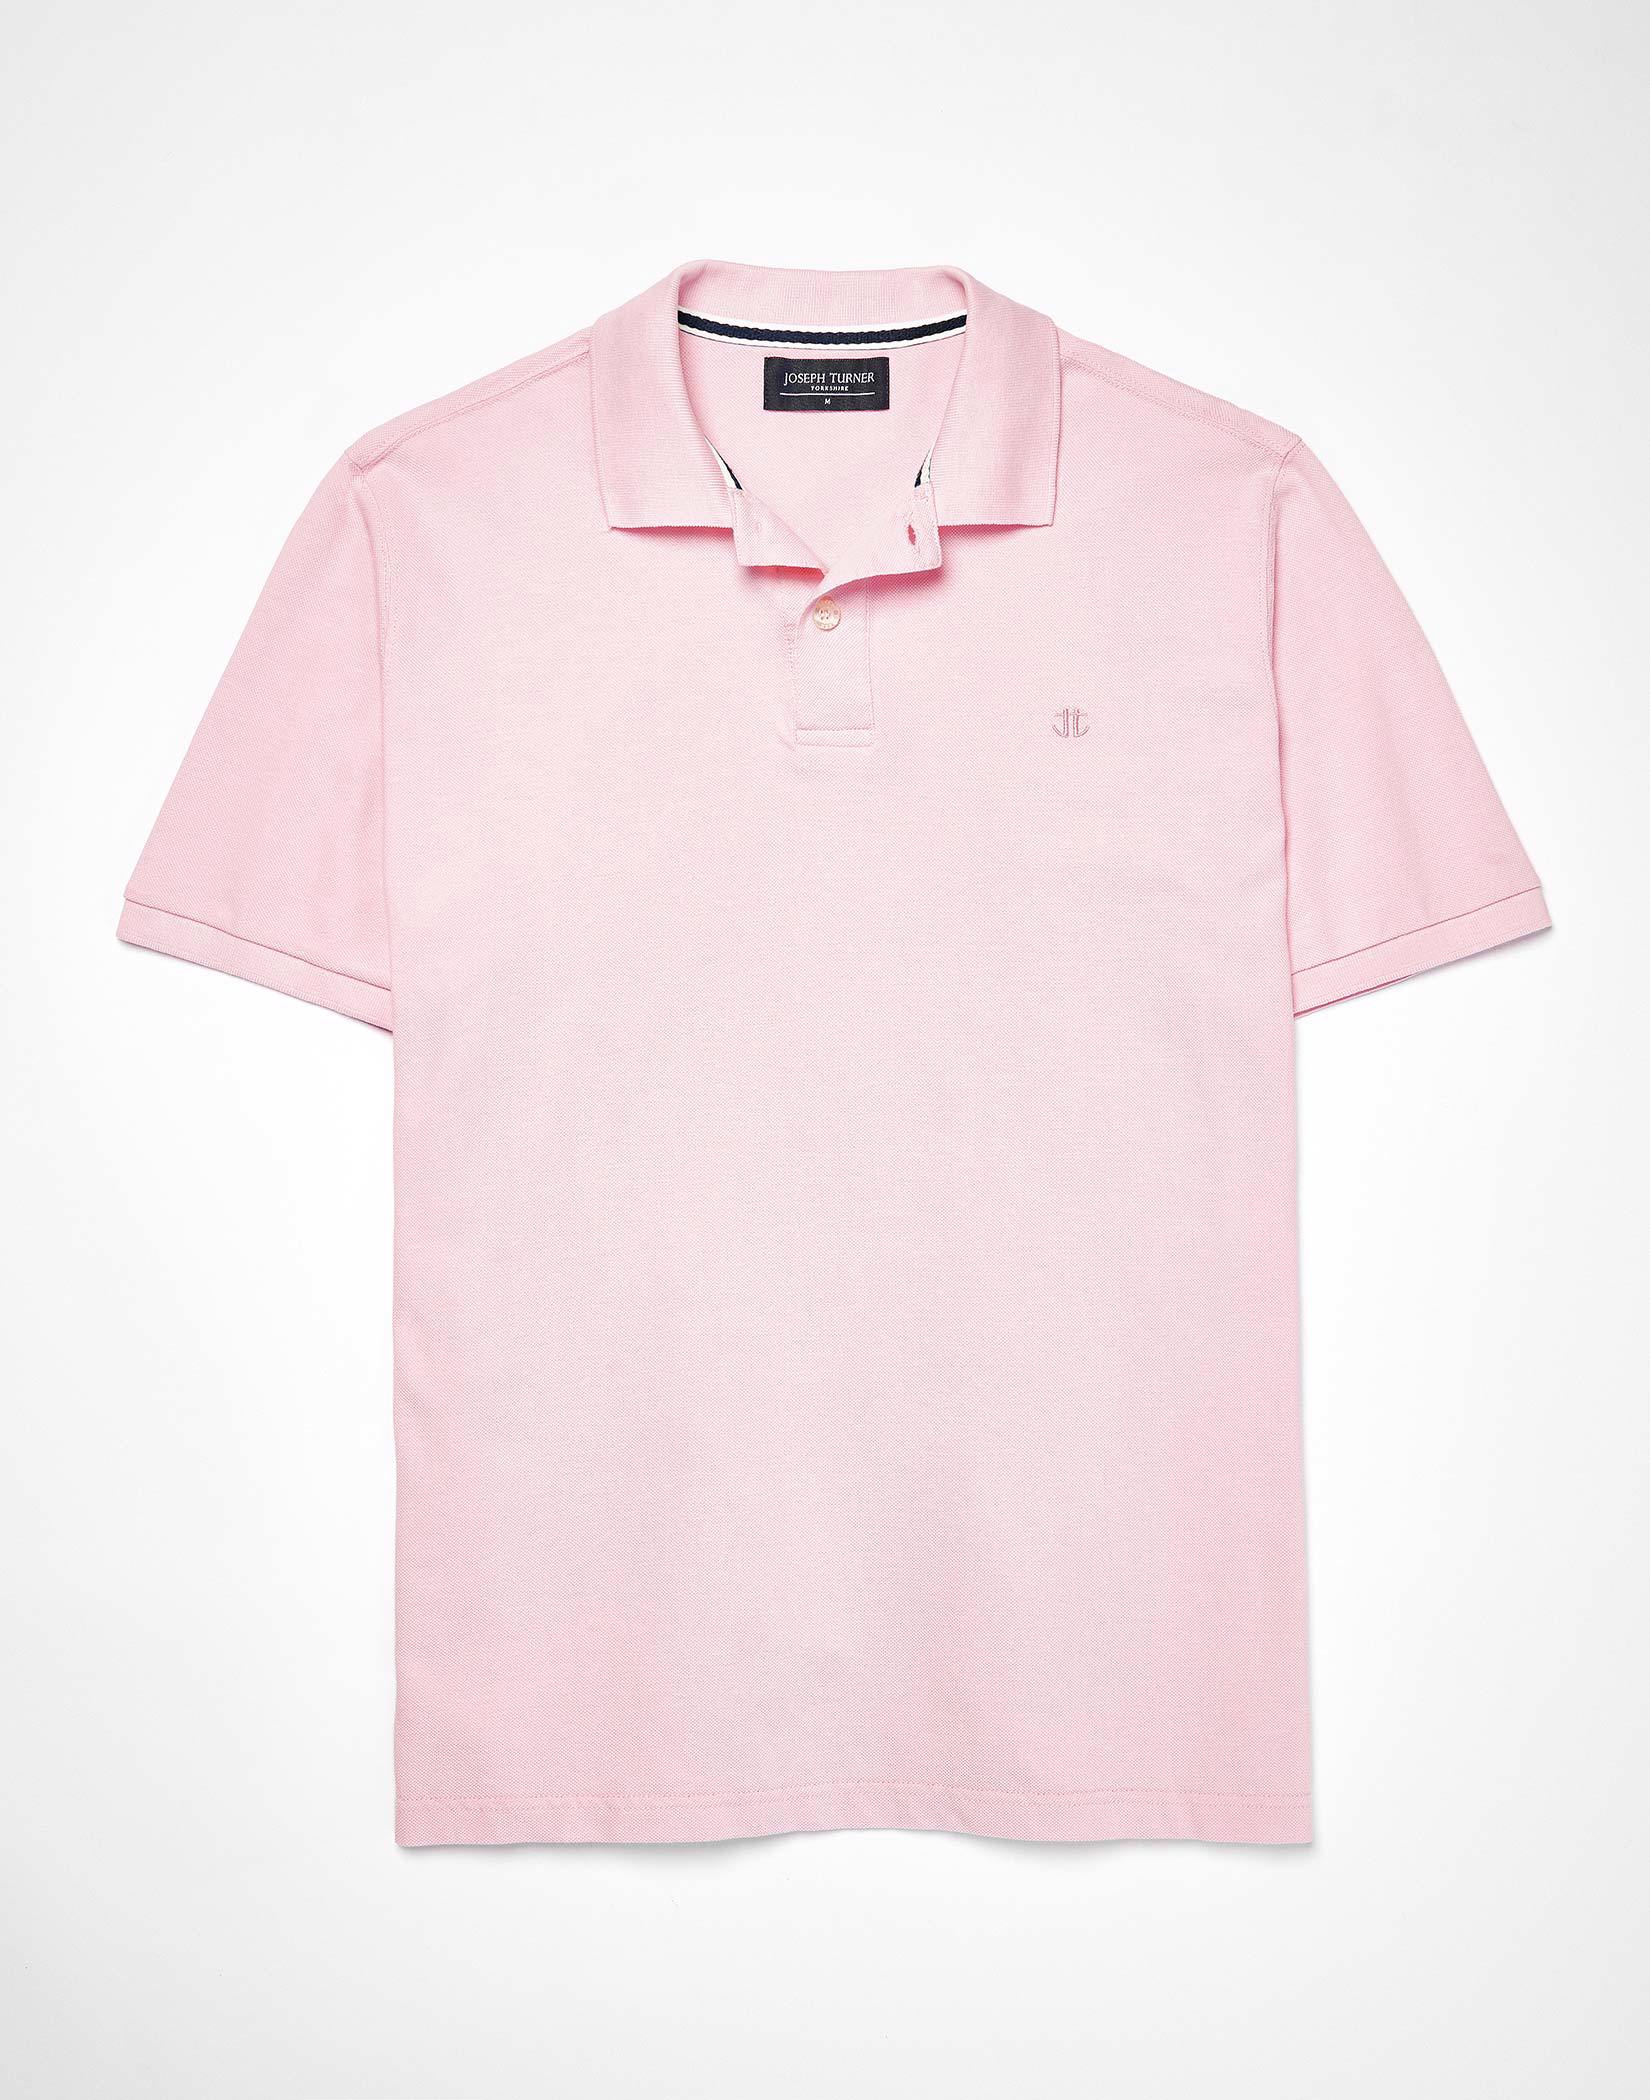 Pique Polo Shirt - Pink